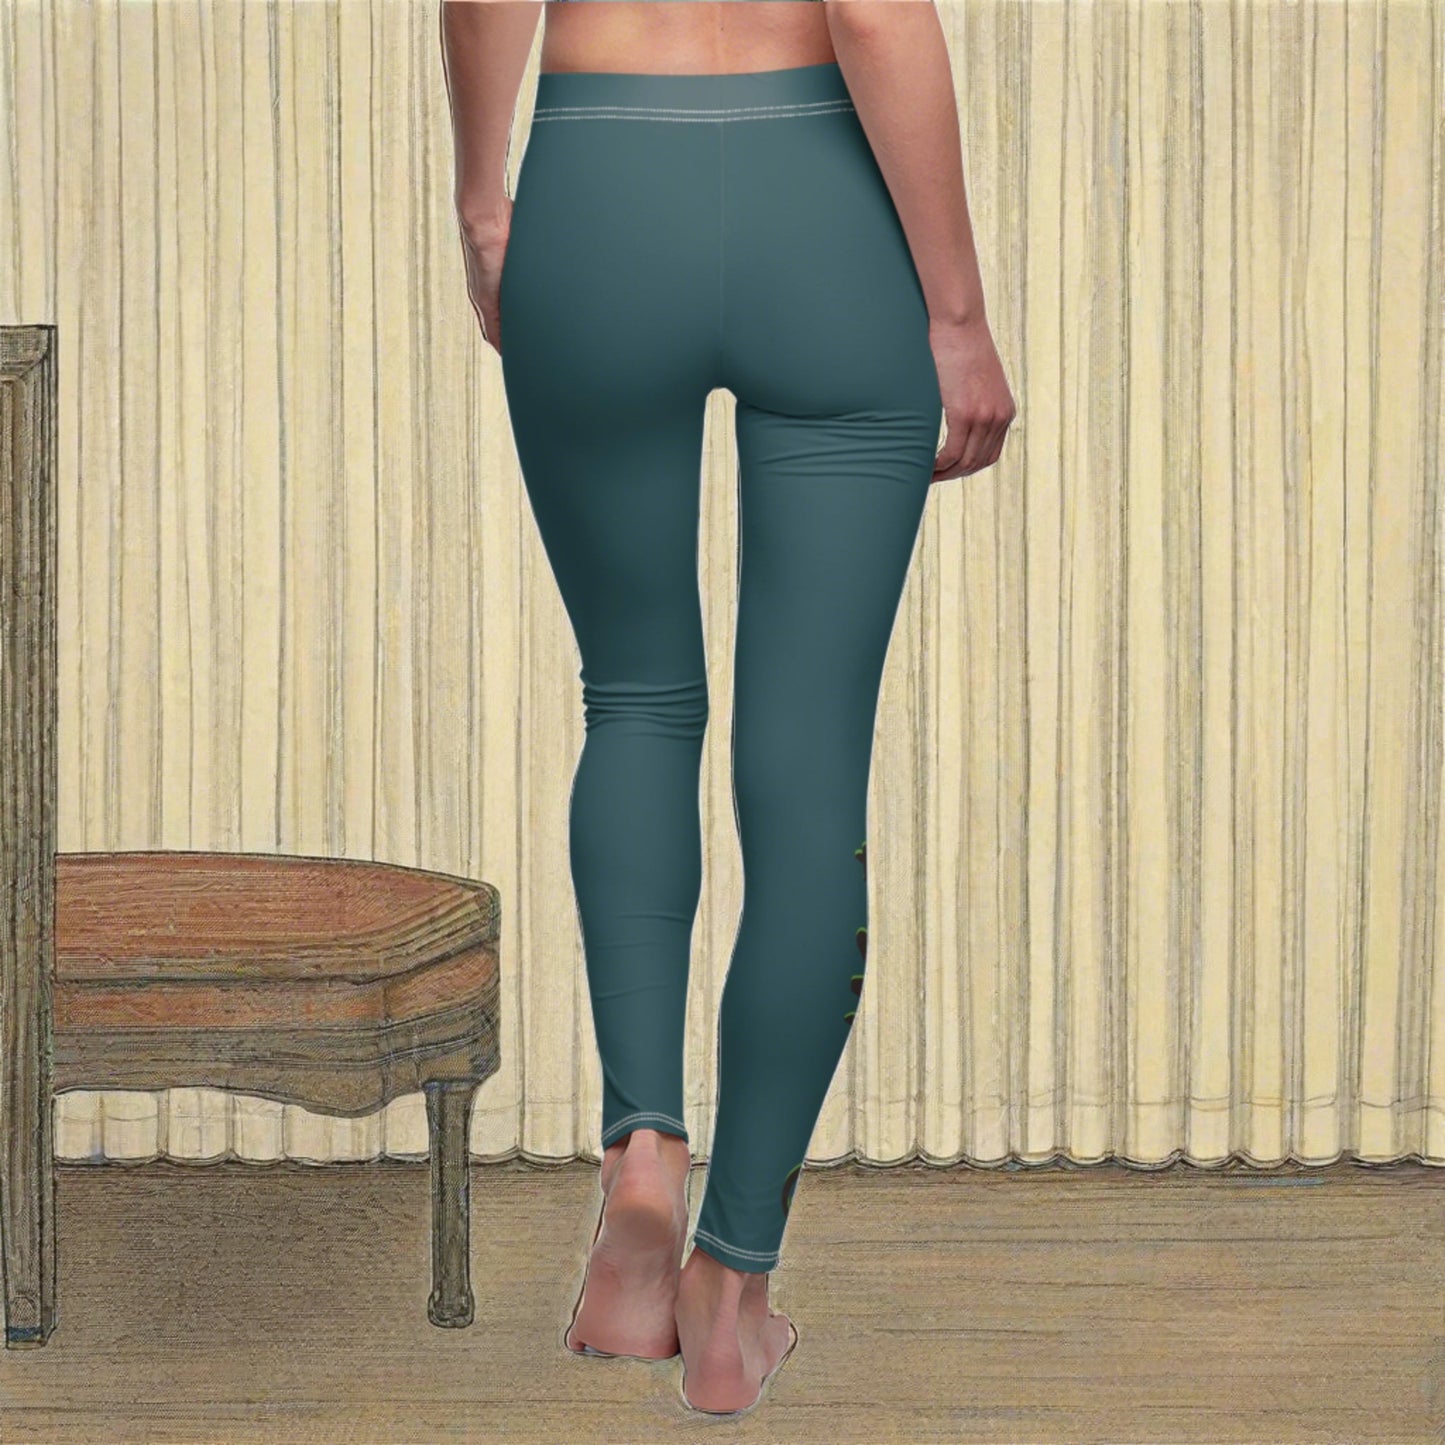 Women's Cut & Sew Casual Leggings | Turquoise & Brown RevelMates Design